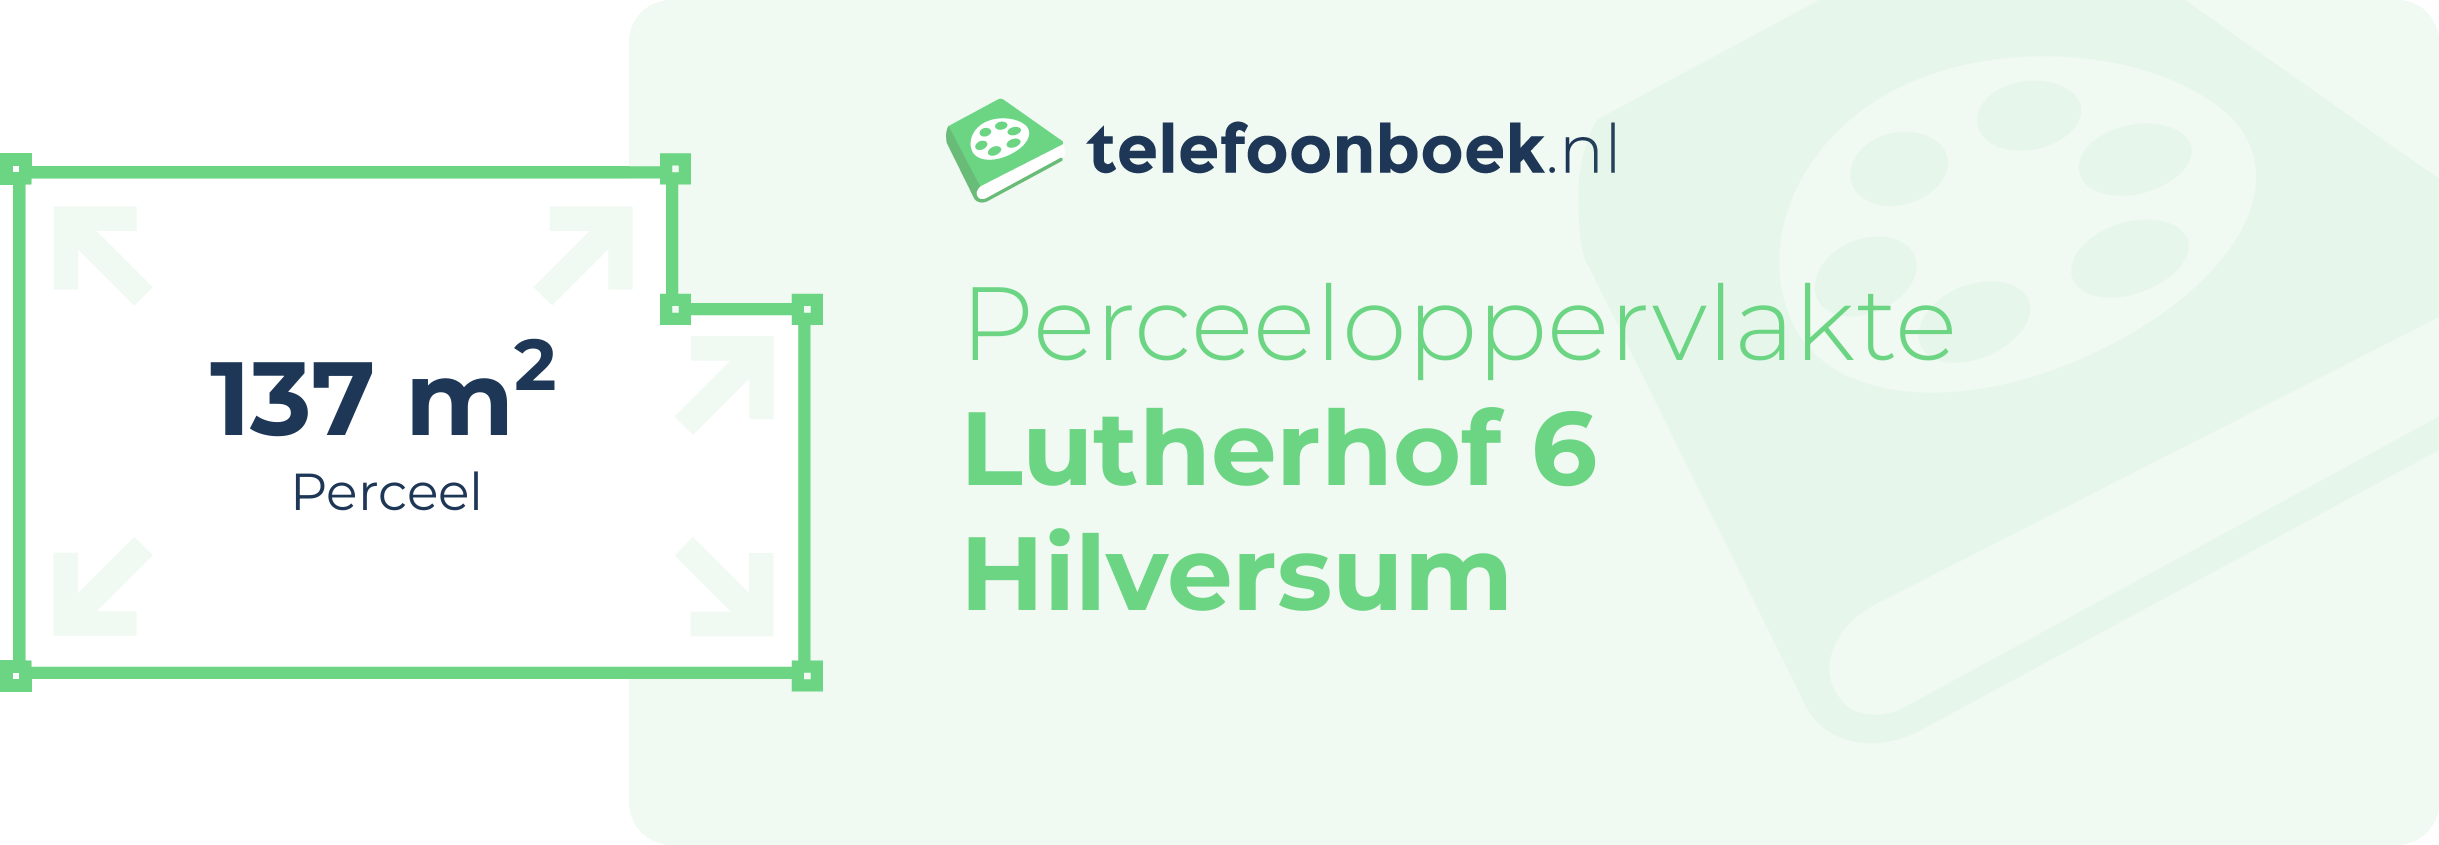 Perceeloppervlakte Lutherhof 6 Hilversum